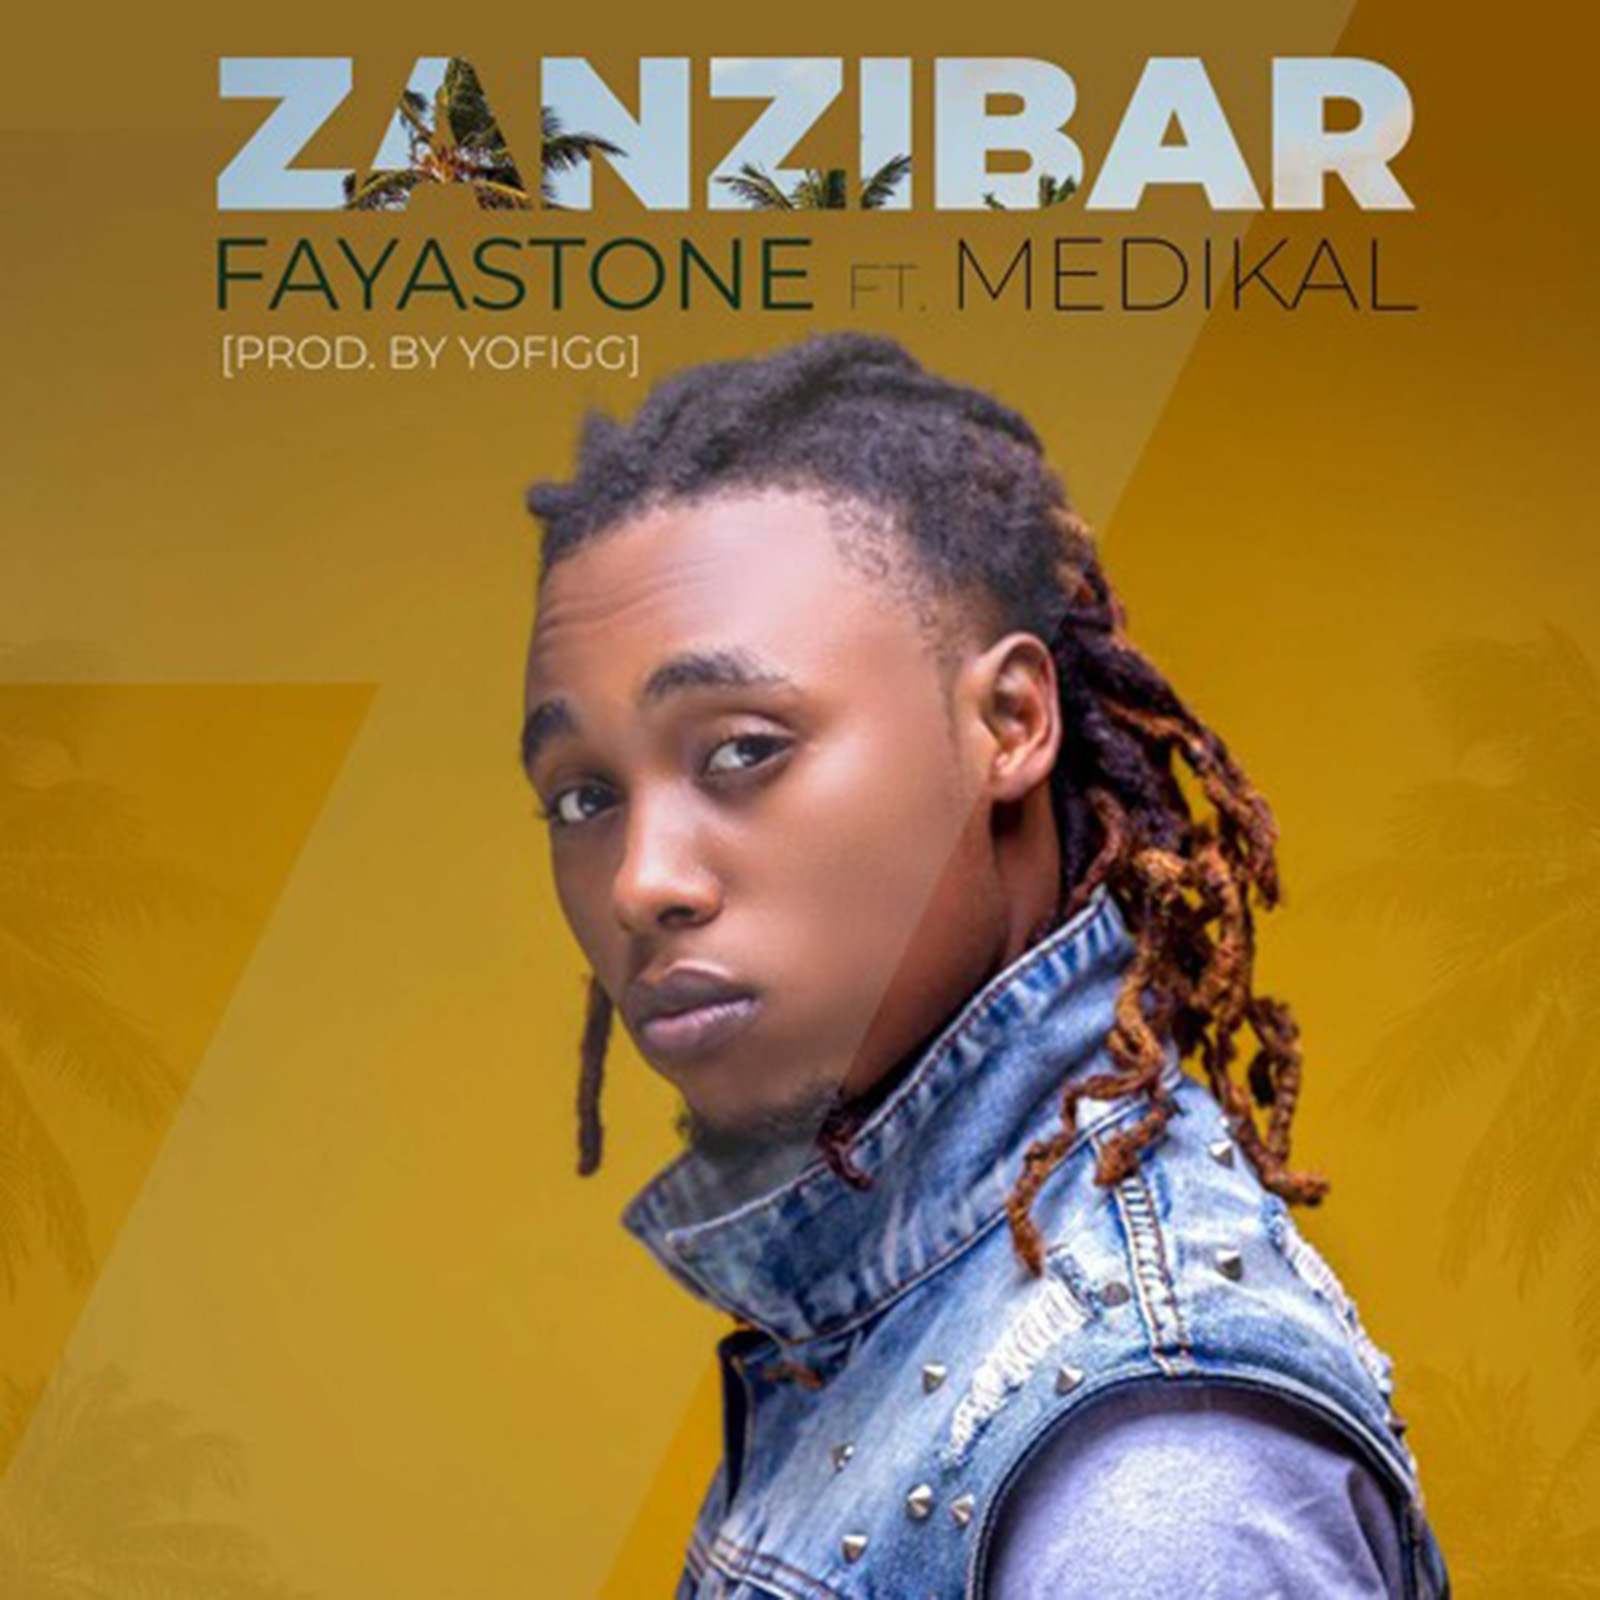 Fayastone by Zanzibar feat. Medikal